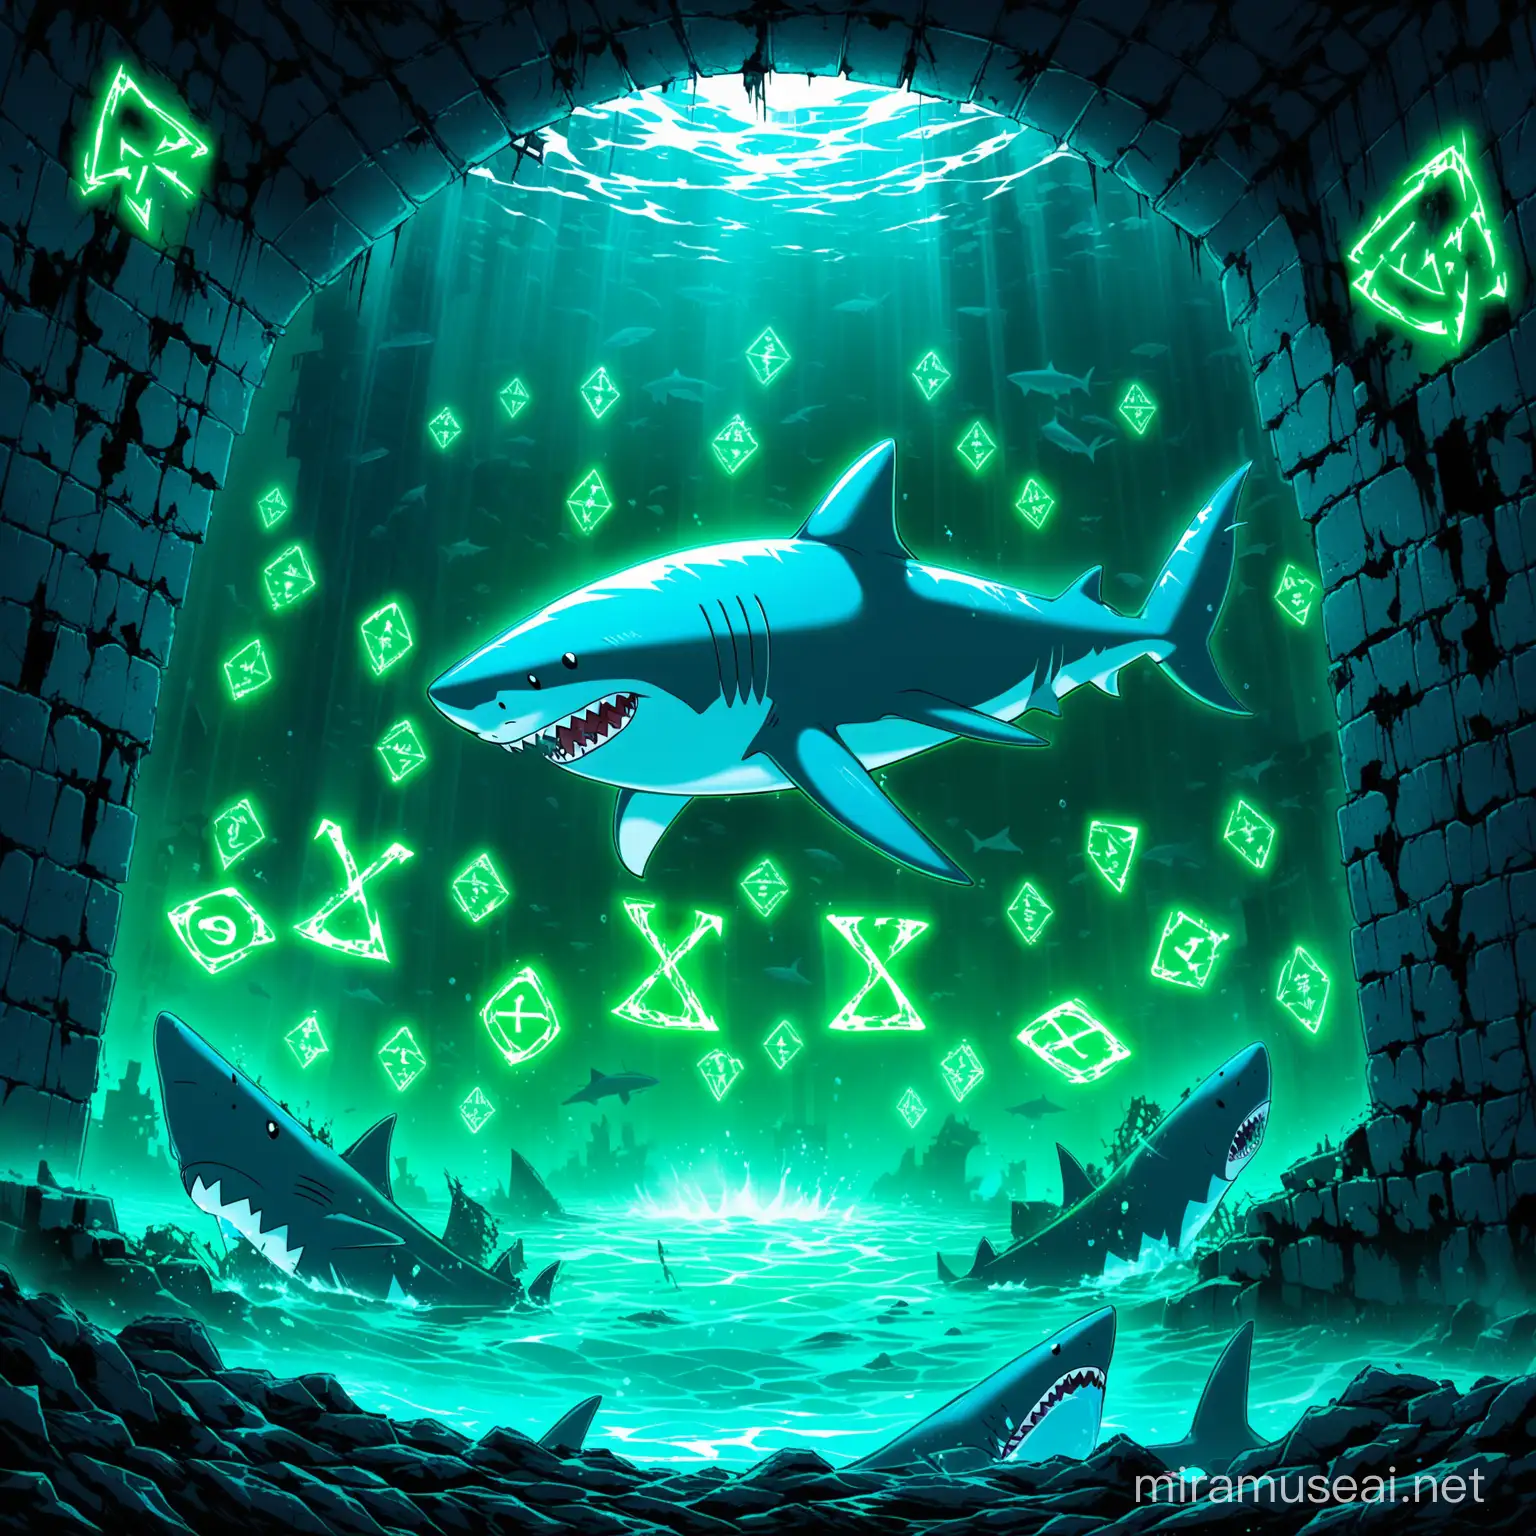 Ghost-Shark
appreance-shark body/see-through/full body/ noir-blue /white/scary/shark-runes glyphs
background-under ruins/water/neon green
